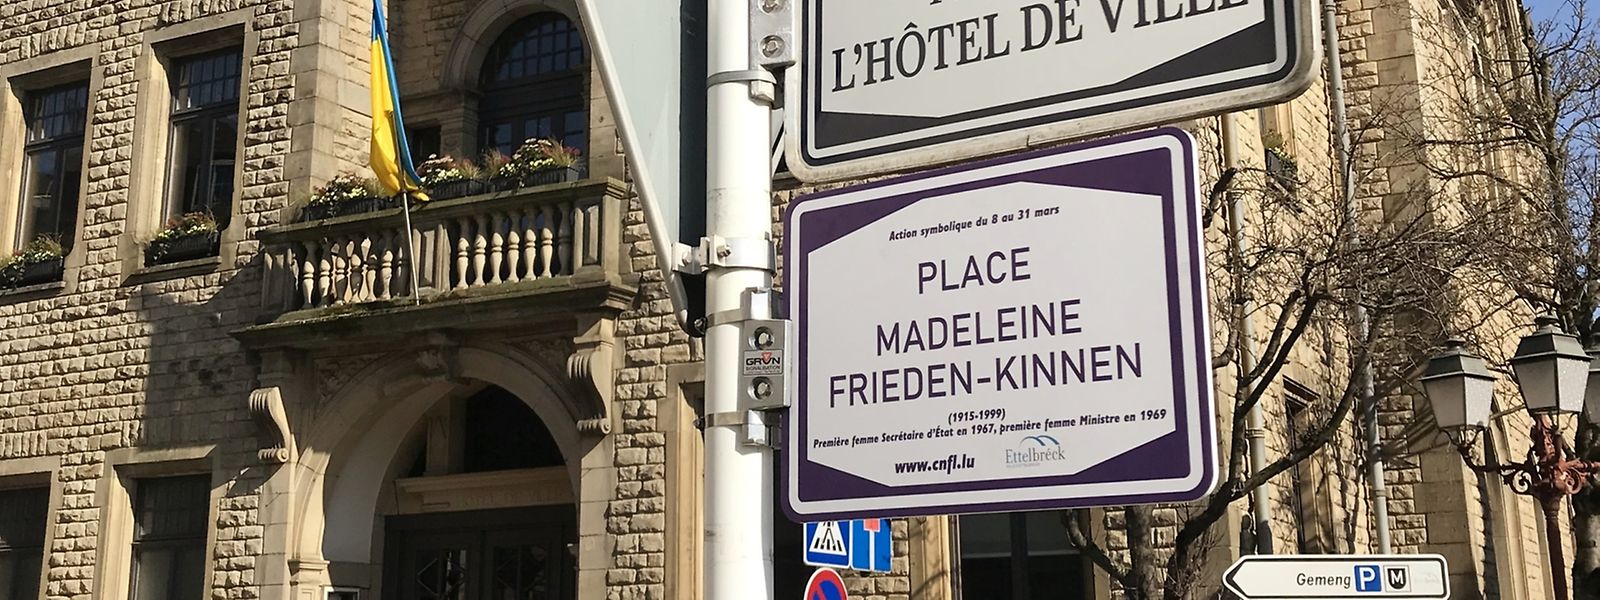 La place de l’Hôtel de ville à Ettelbruck est dédiée à l'ancienne politicienne Madeleine Frieden-Kinnen. 